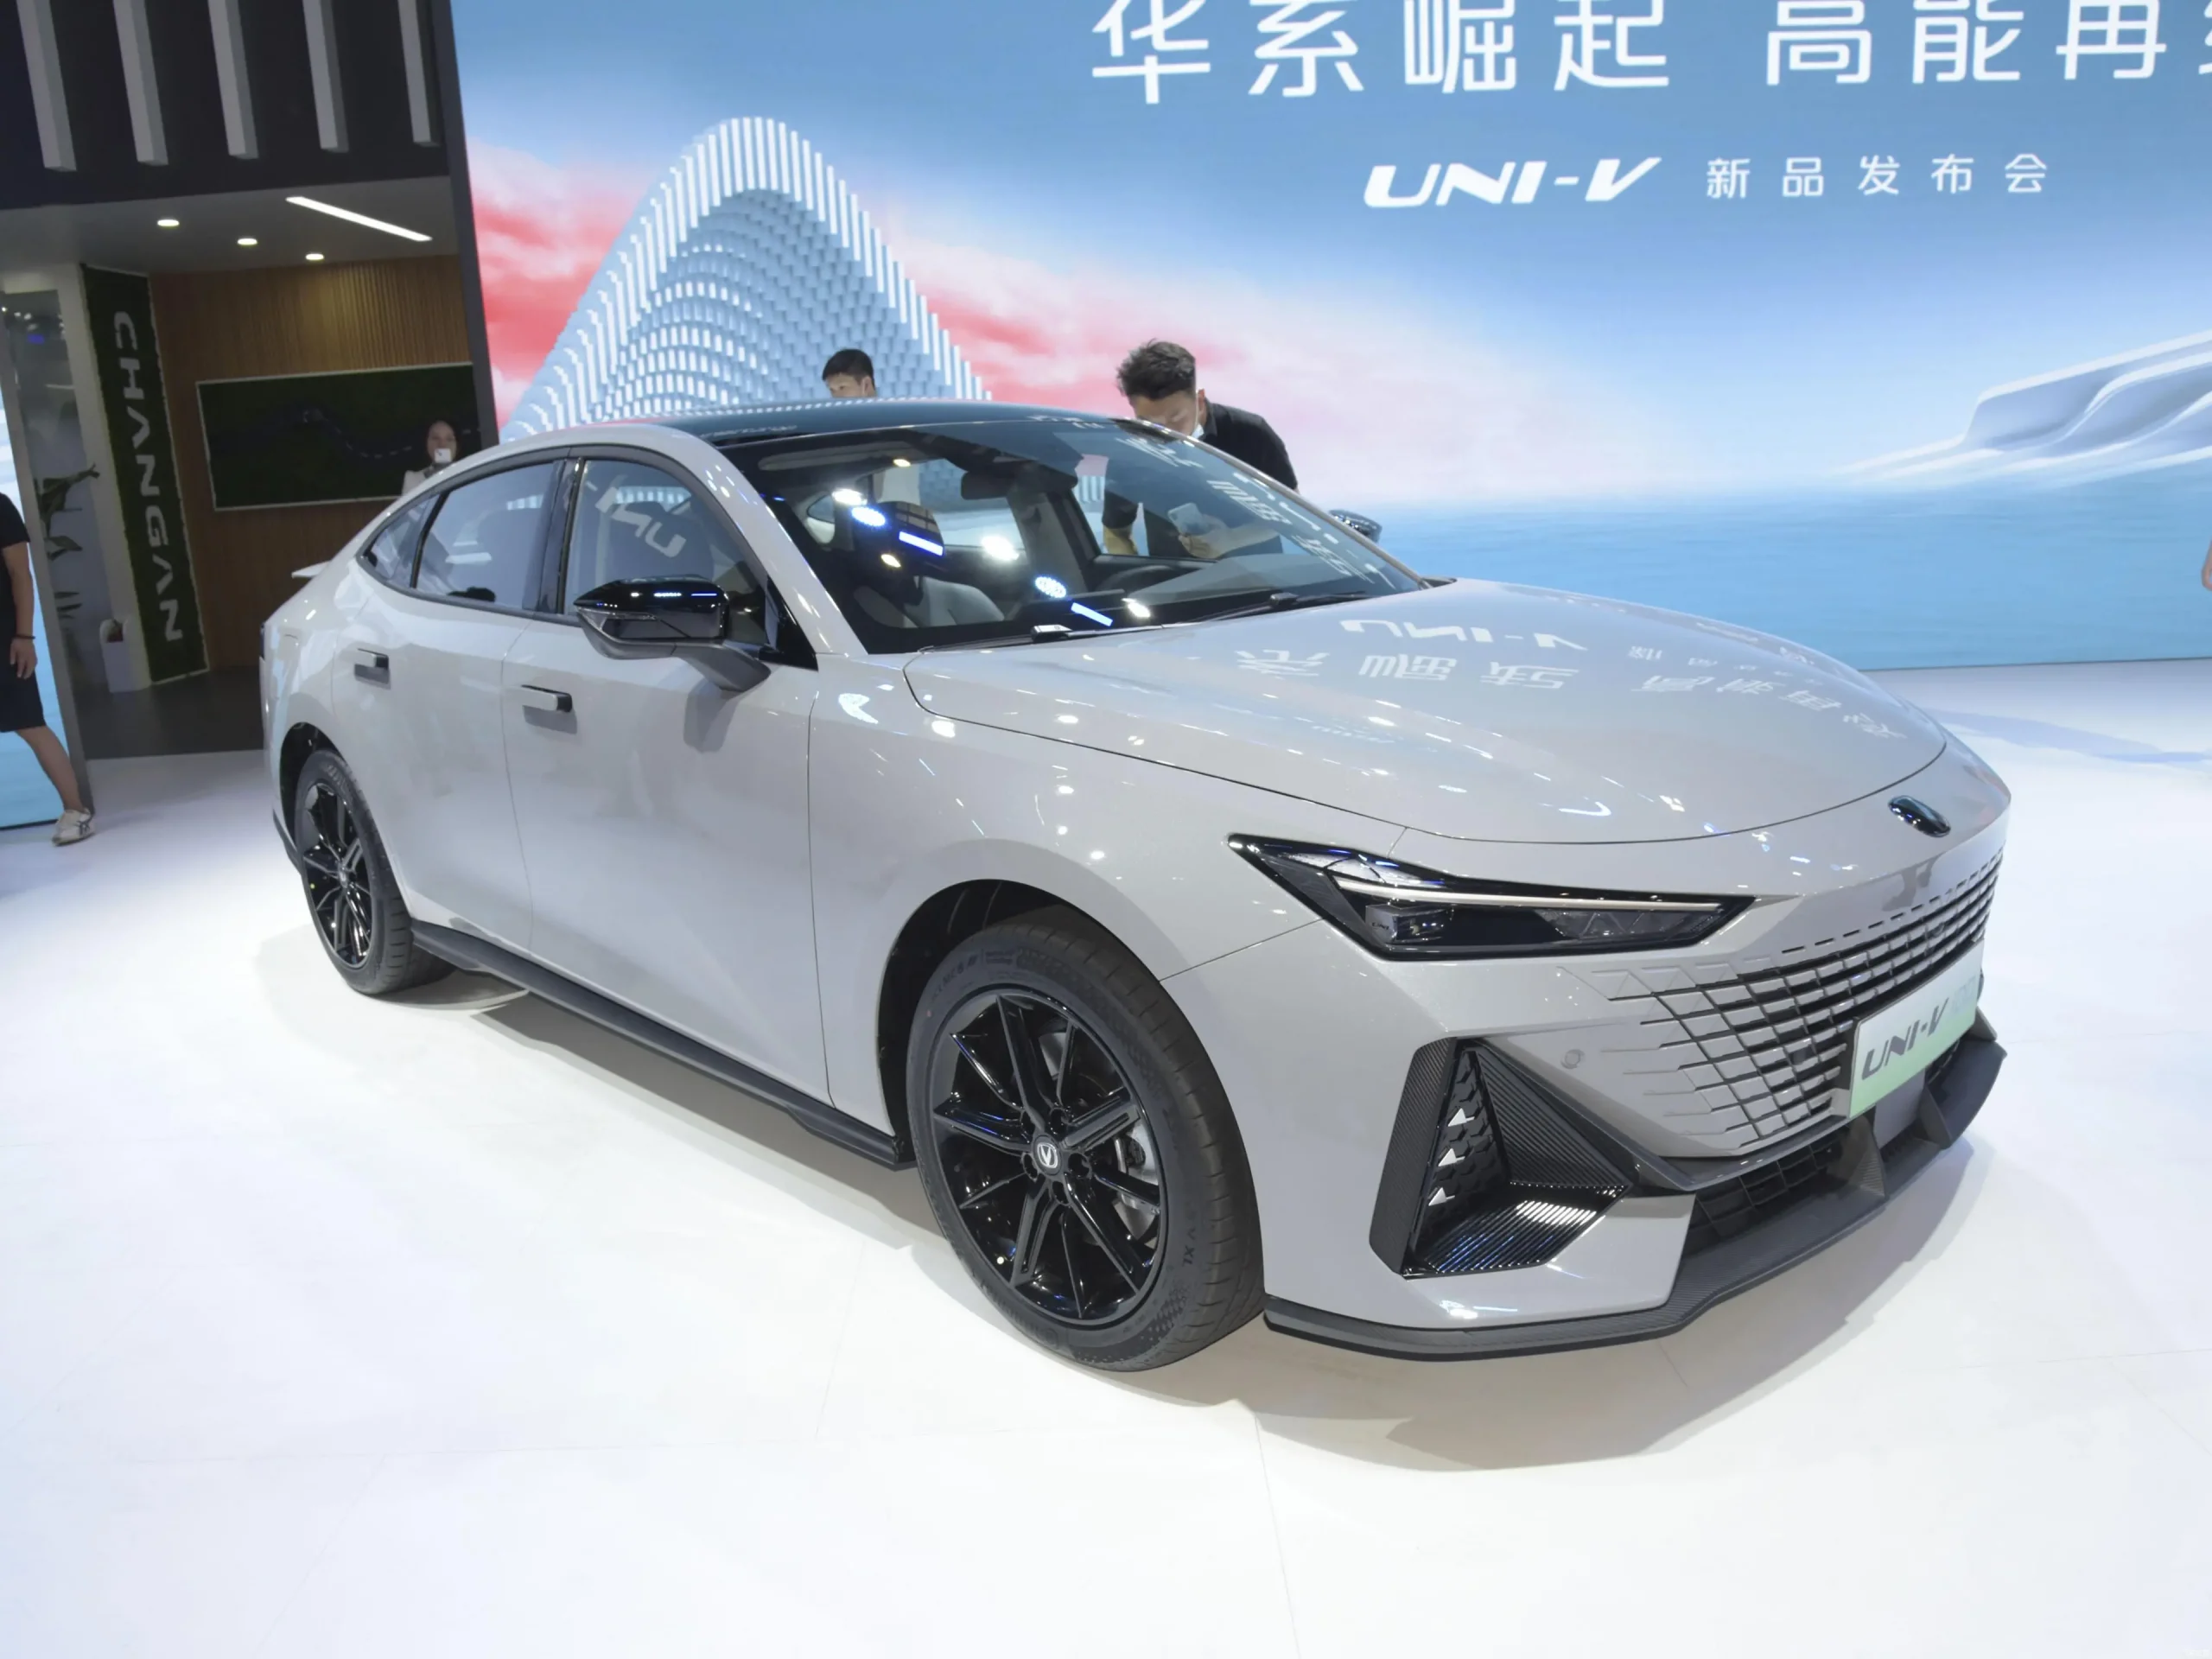 شبكة السيارات الصينية – شانجان Uni-V الهجينة الجديدة بالصين؟ ماذا تعرف عنها! استهلاك وقود 1.59 لتر/100 كم